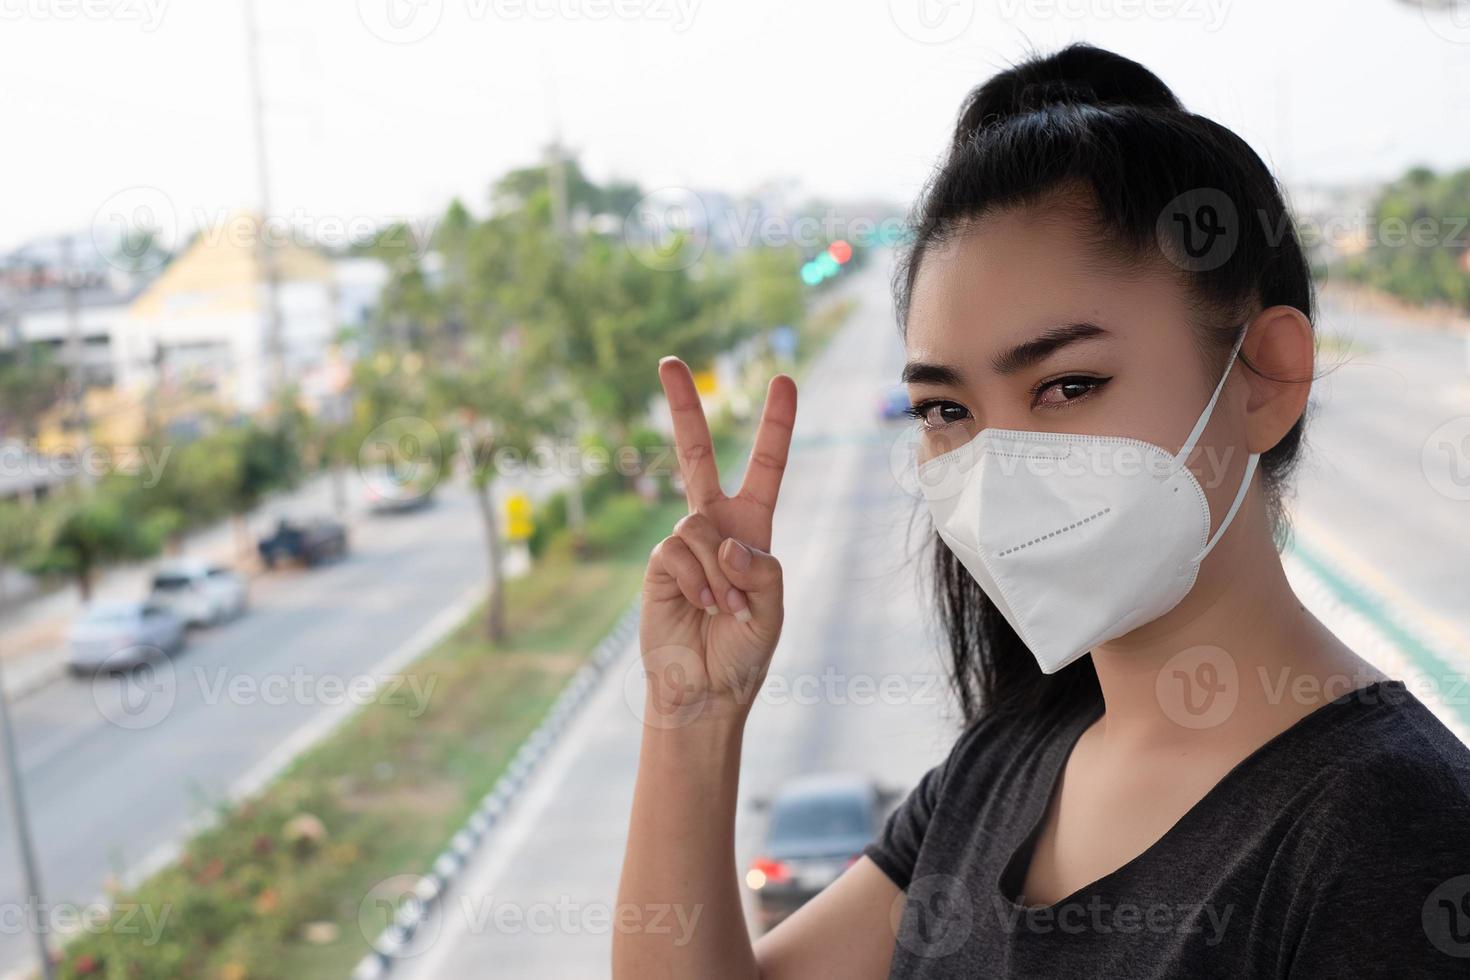 mujer de pie signo de mano de 2 dedos con ponerse el respirador n95 máscara para protegerse de enfermedades respiratorias transmitidas por el aire como la gripe covid-19 coronavirus pm2.5 polvo y smog en la carretera centrico foto